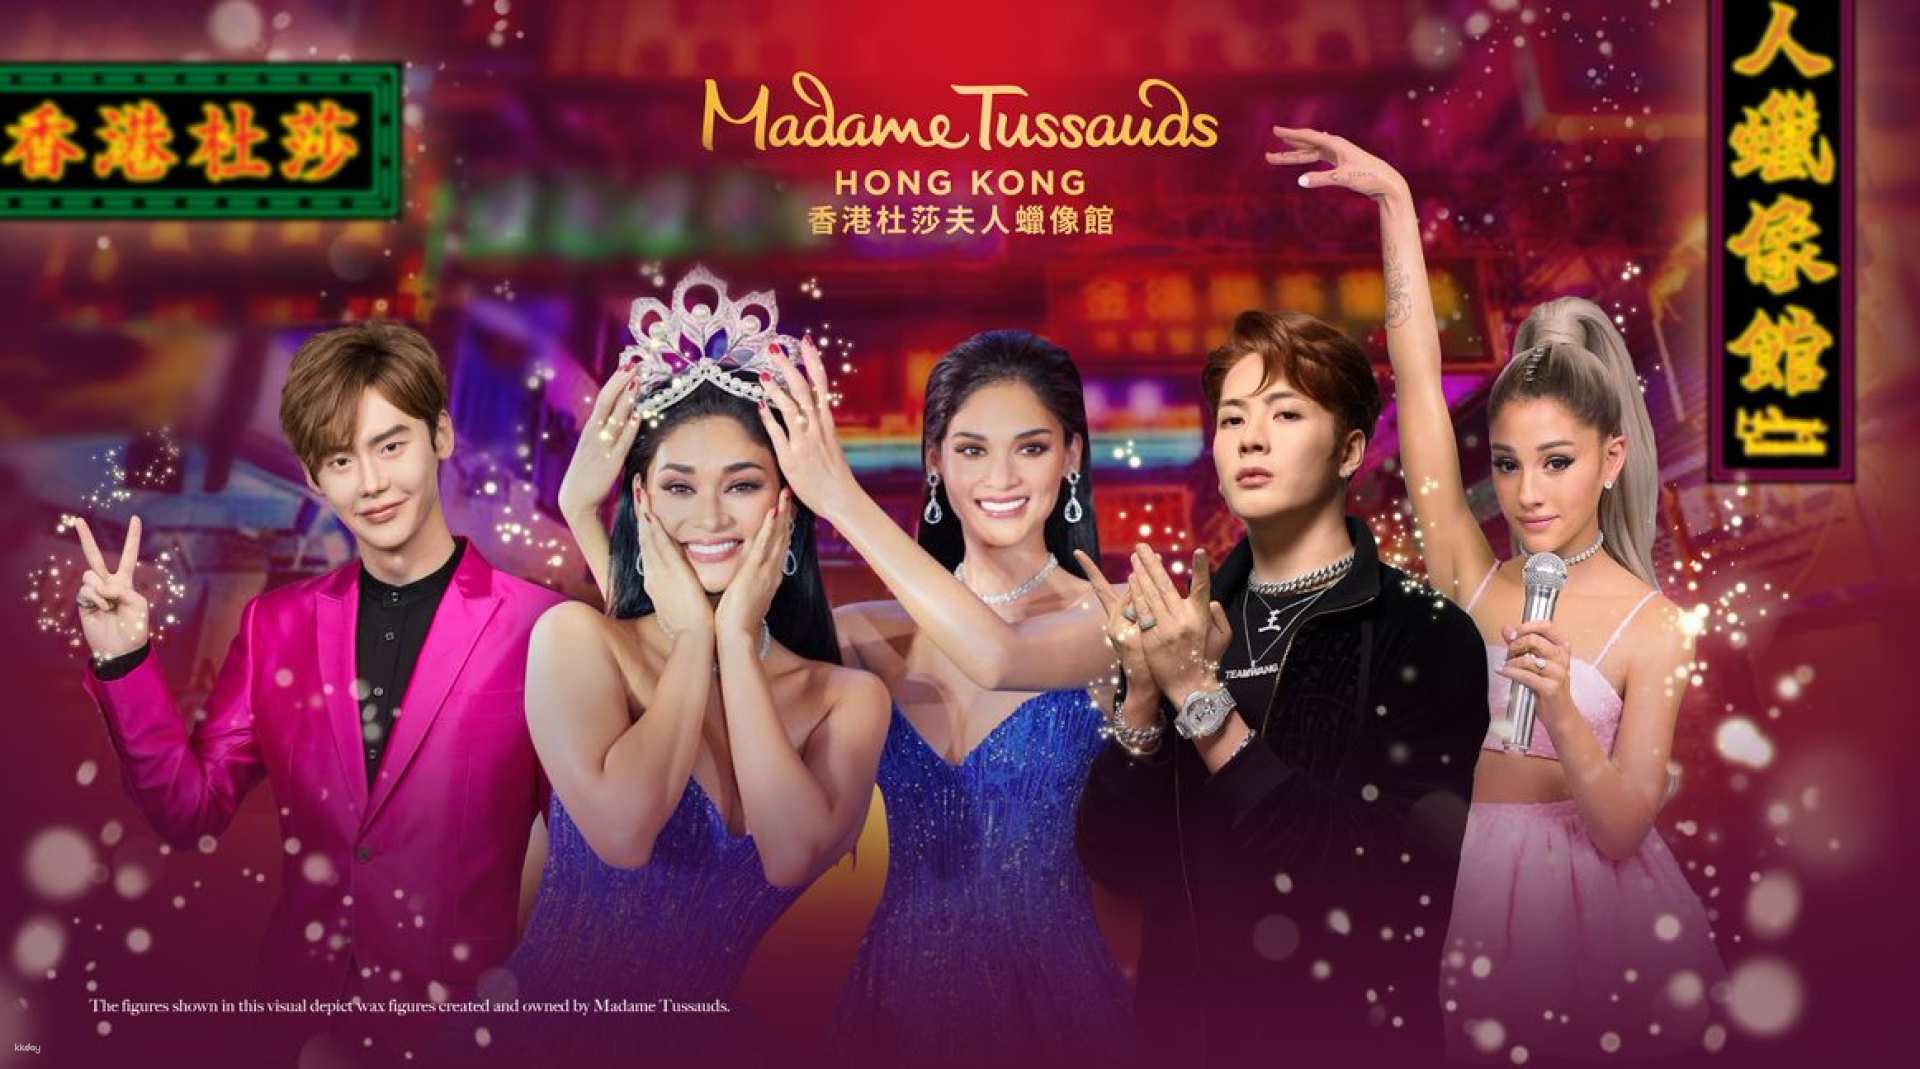 【香港】杜莎夫人蠟像館 Madame Tussauds Hong Kong 門票｜全球名人進駐